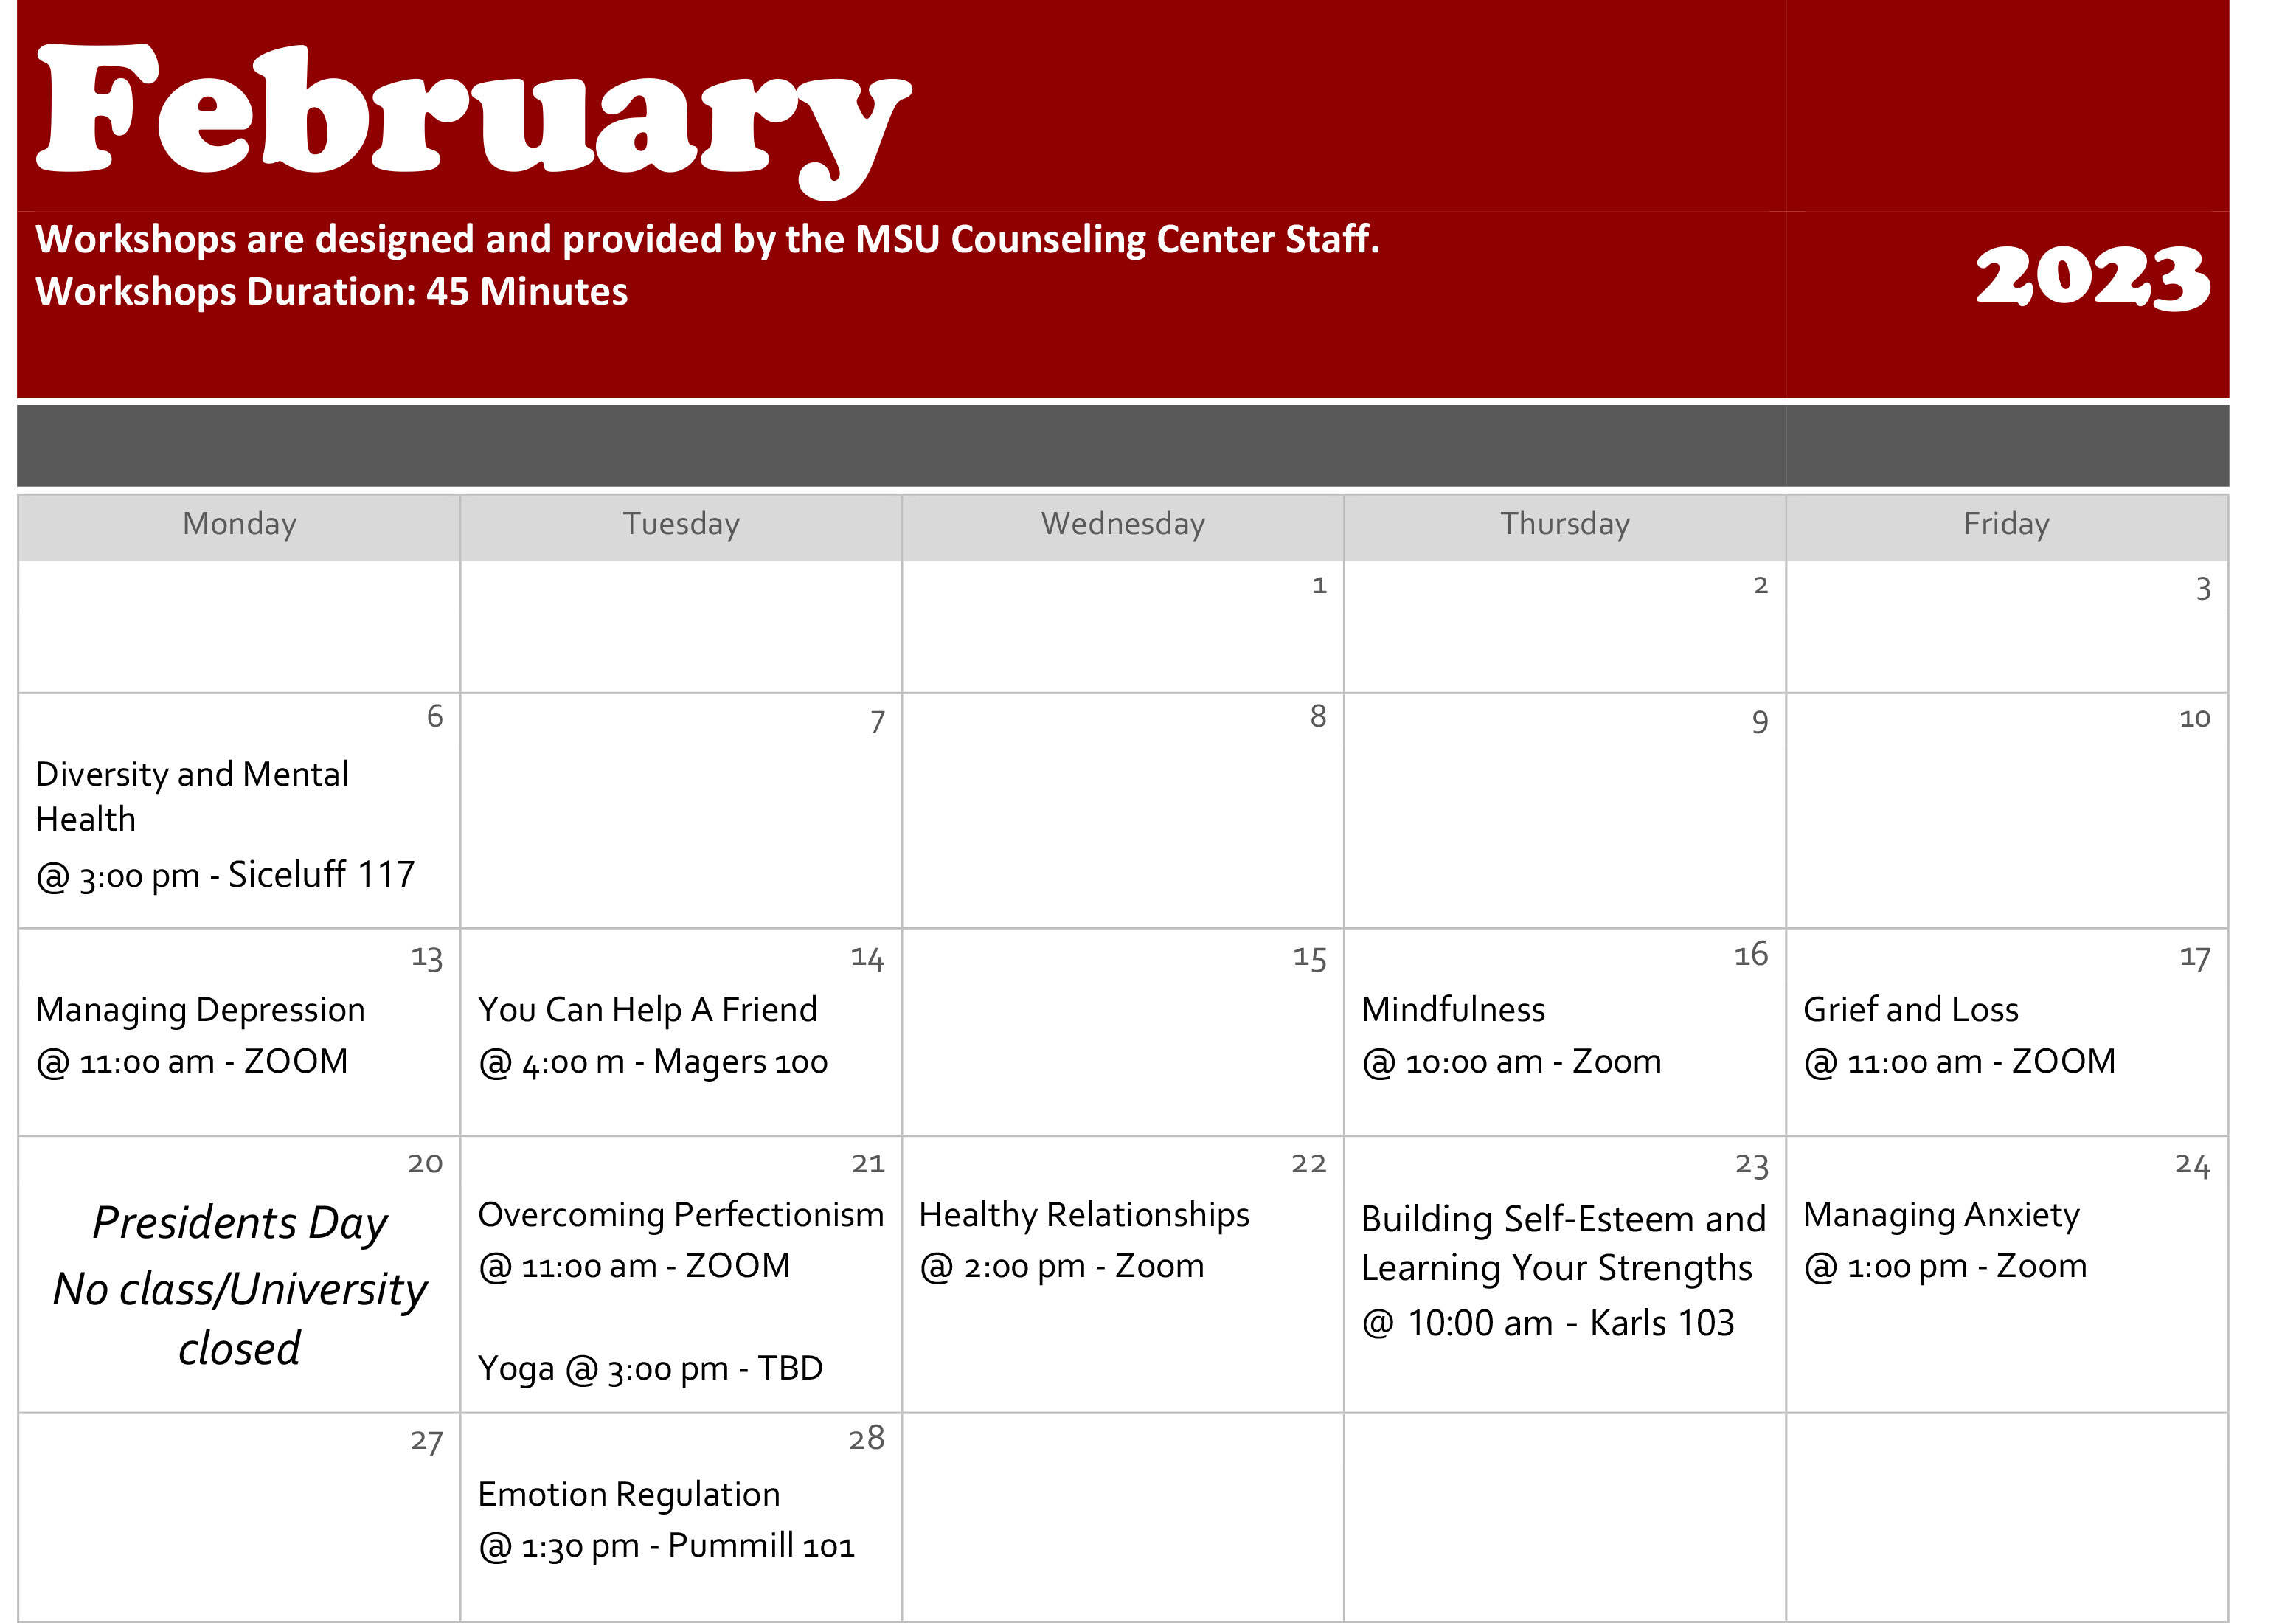 February 2023 Workshops